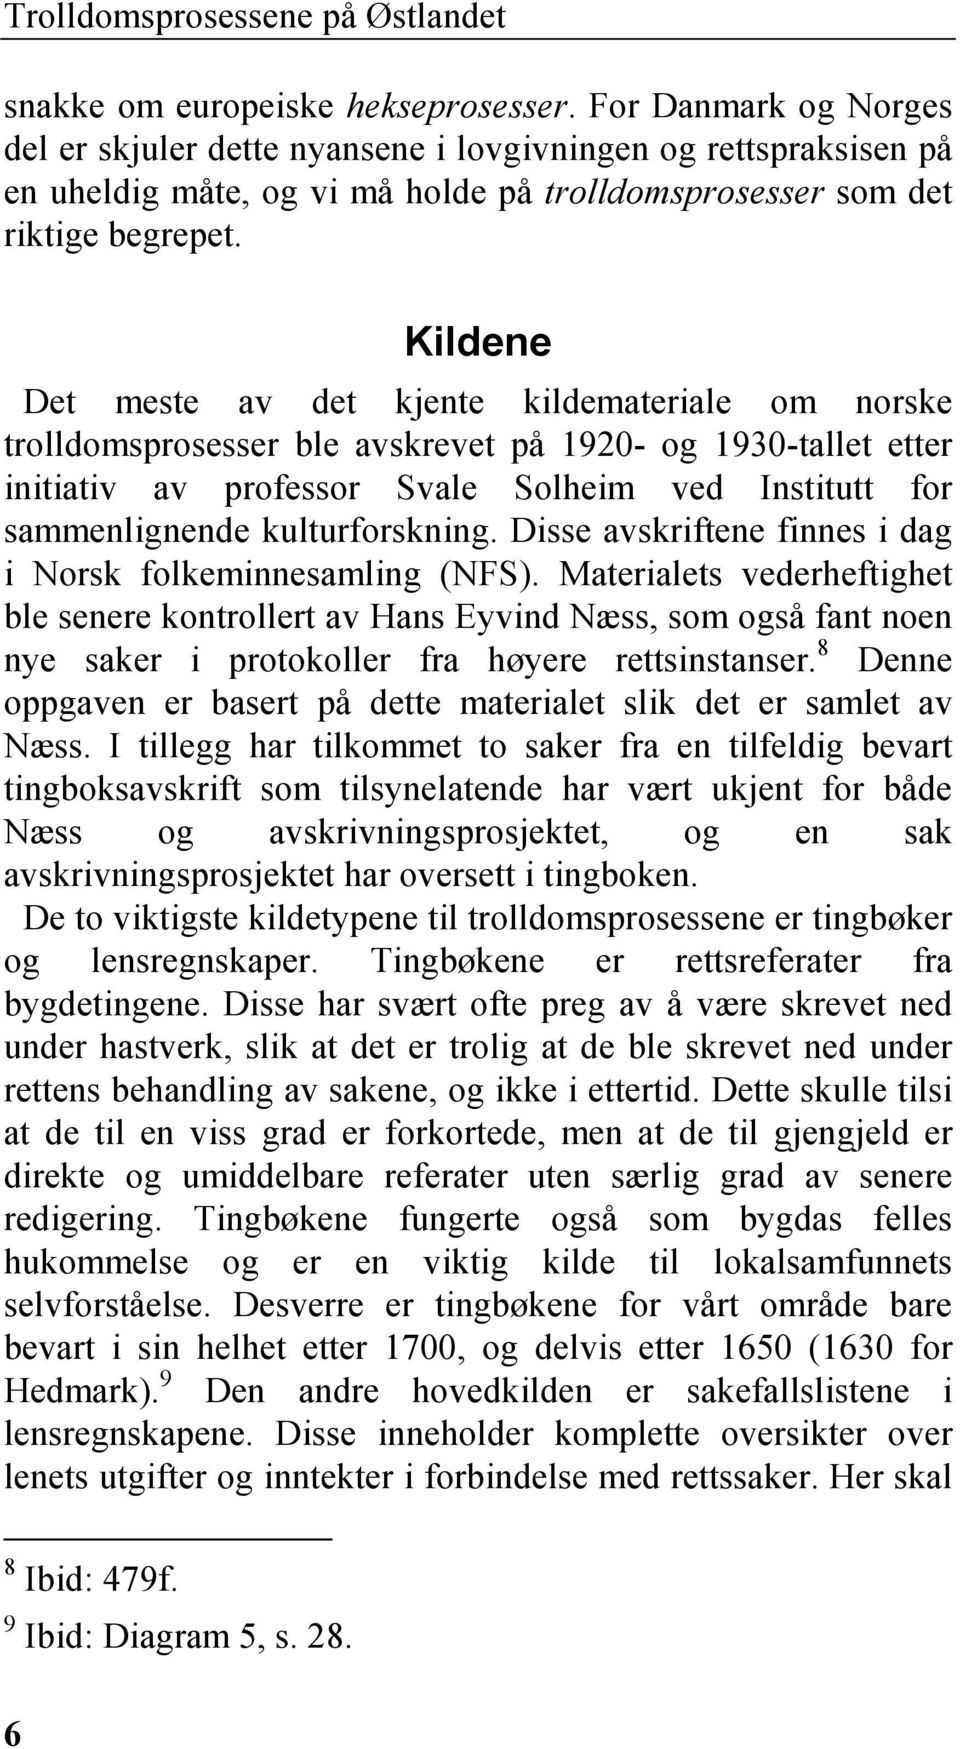 Kildene Det meste av det kjente kildemateriale om norske trolldomsprosesser ble avskrevet på 1920- og 1930-tallet etter initiativ av professor Svale Solheim ved Institutt for sammenlignende